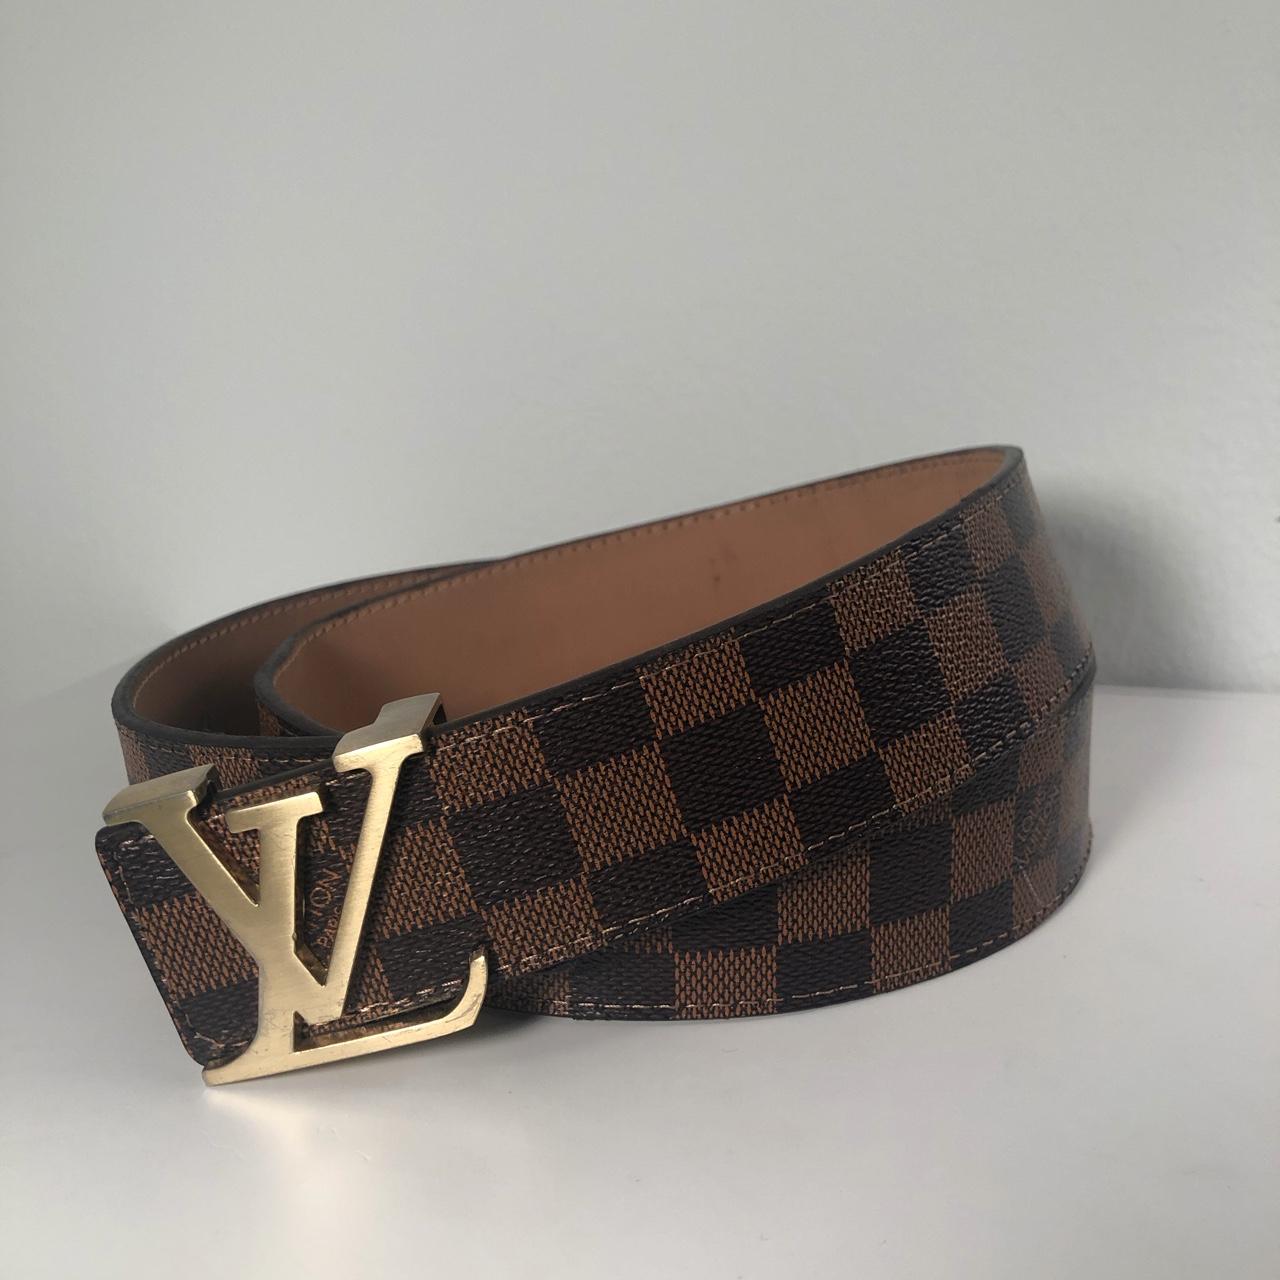 Louis Vuitton Belt #louisvuitton #belt - Depop